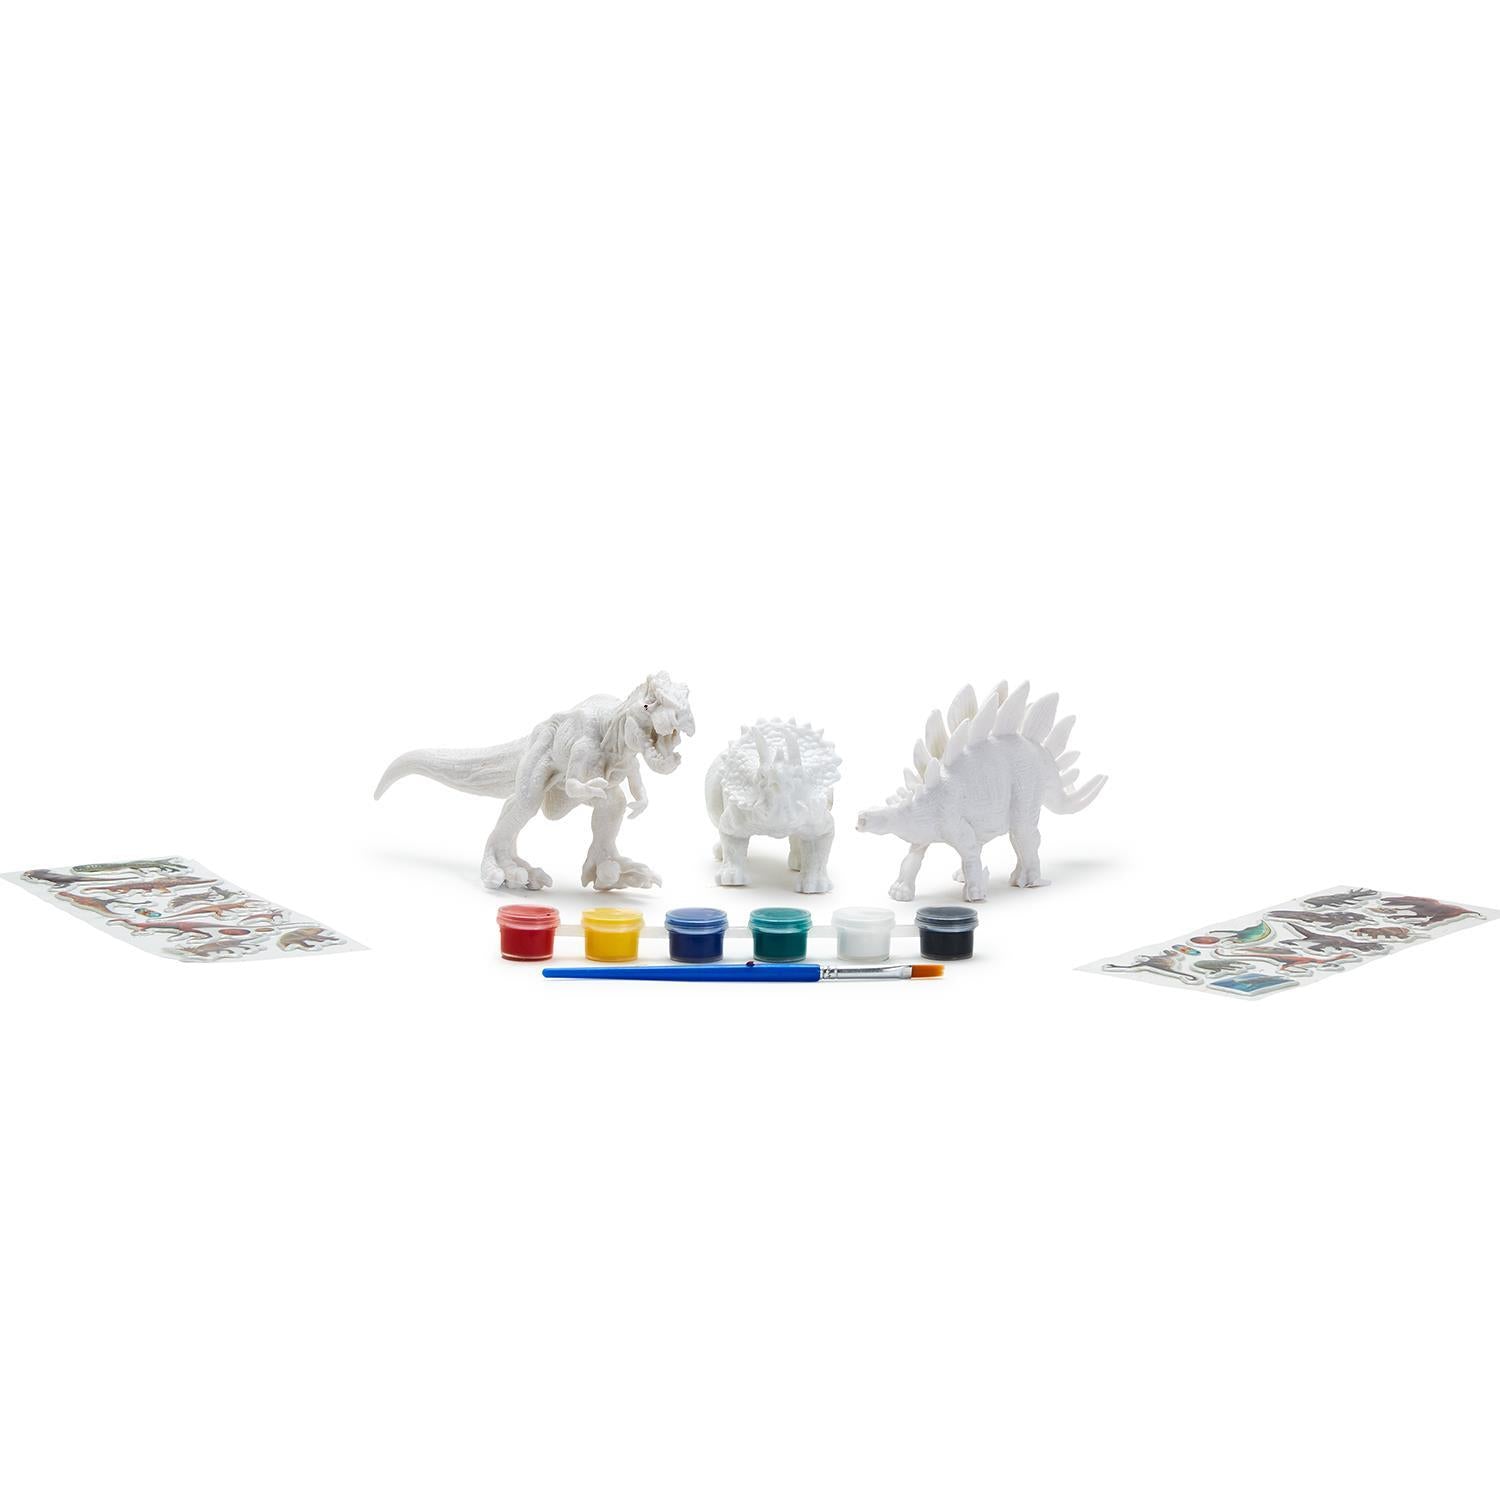 Dino-mite Creativity Dino Painting Kit